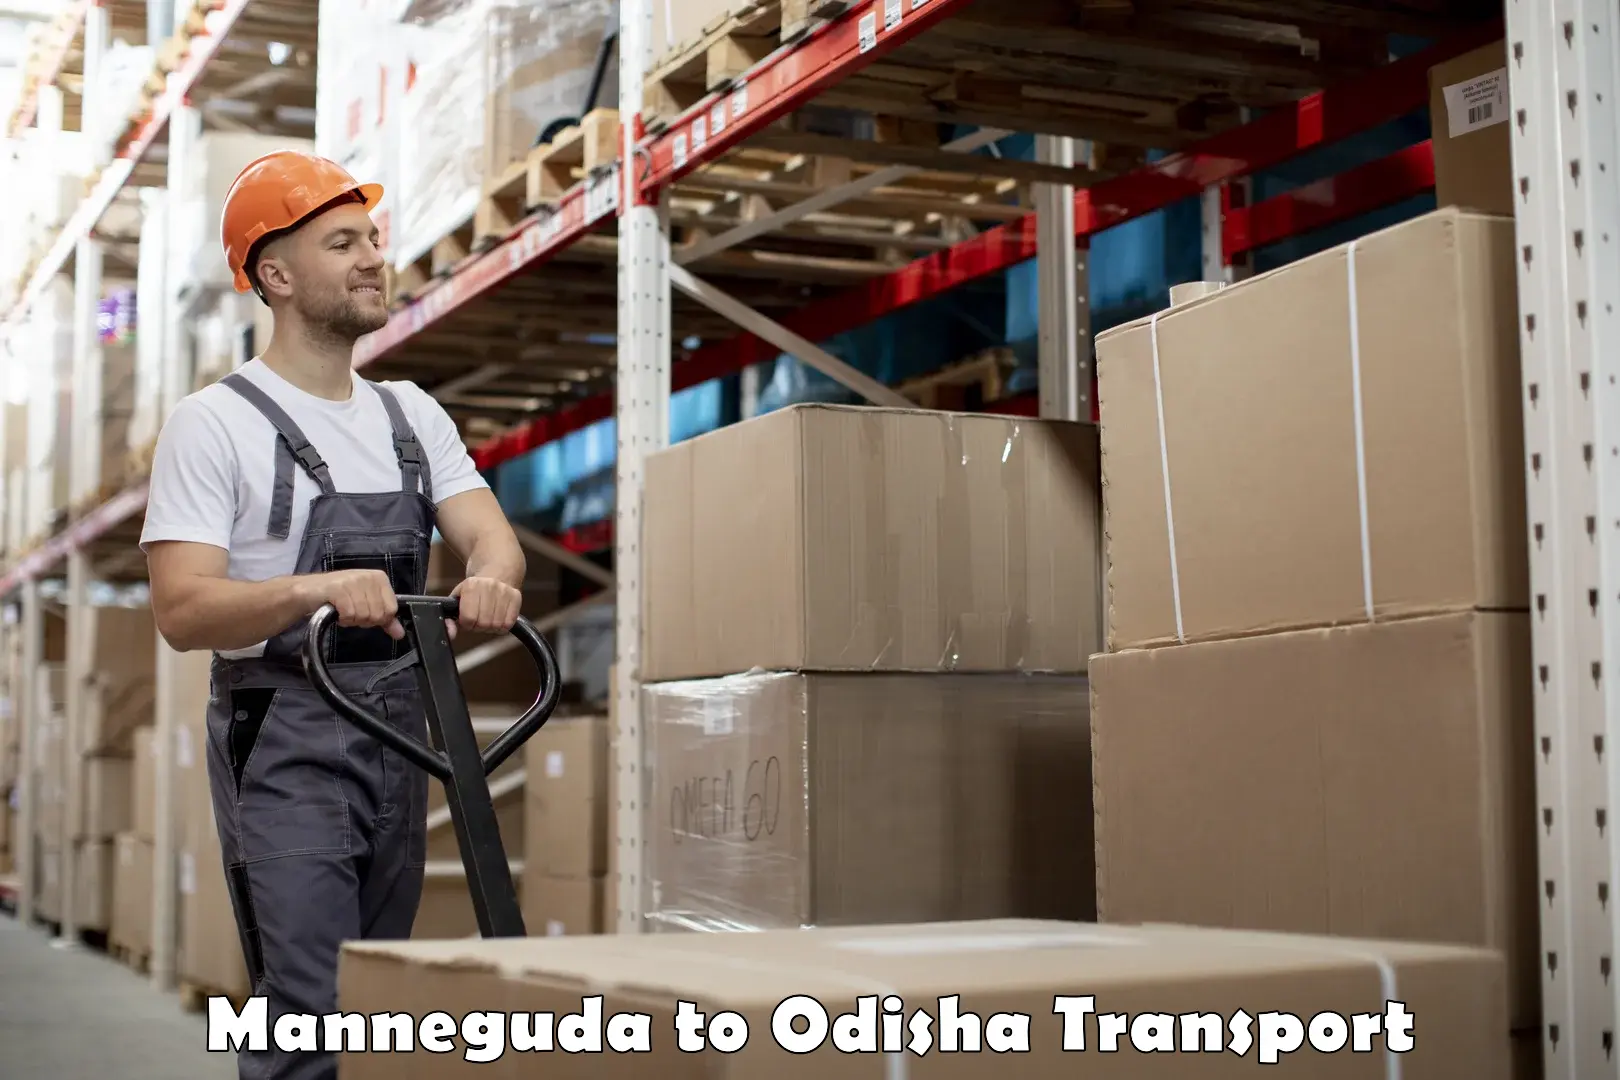 Bike transport service Manneguda to Odisha